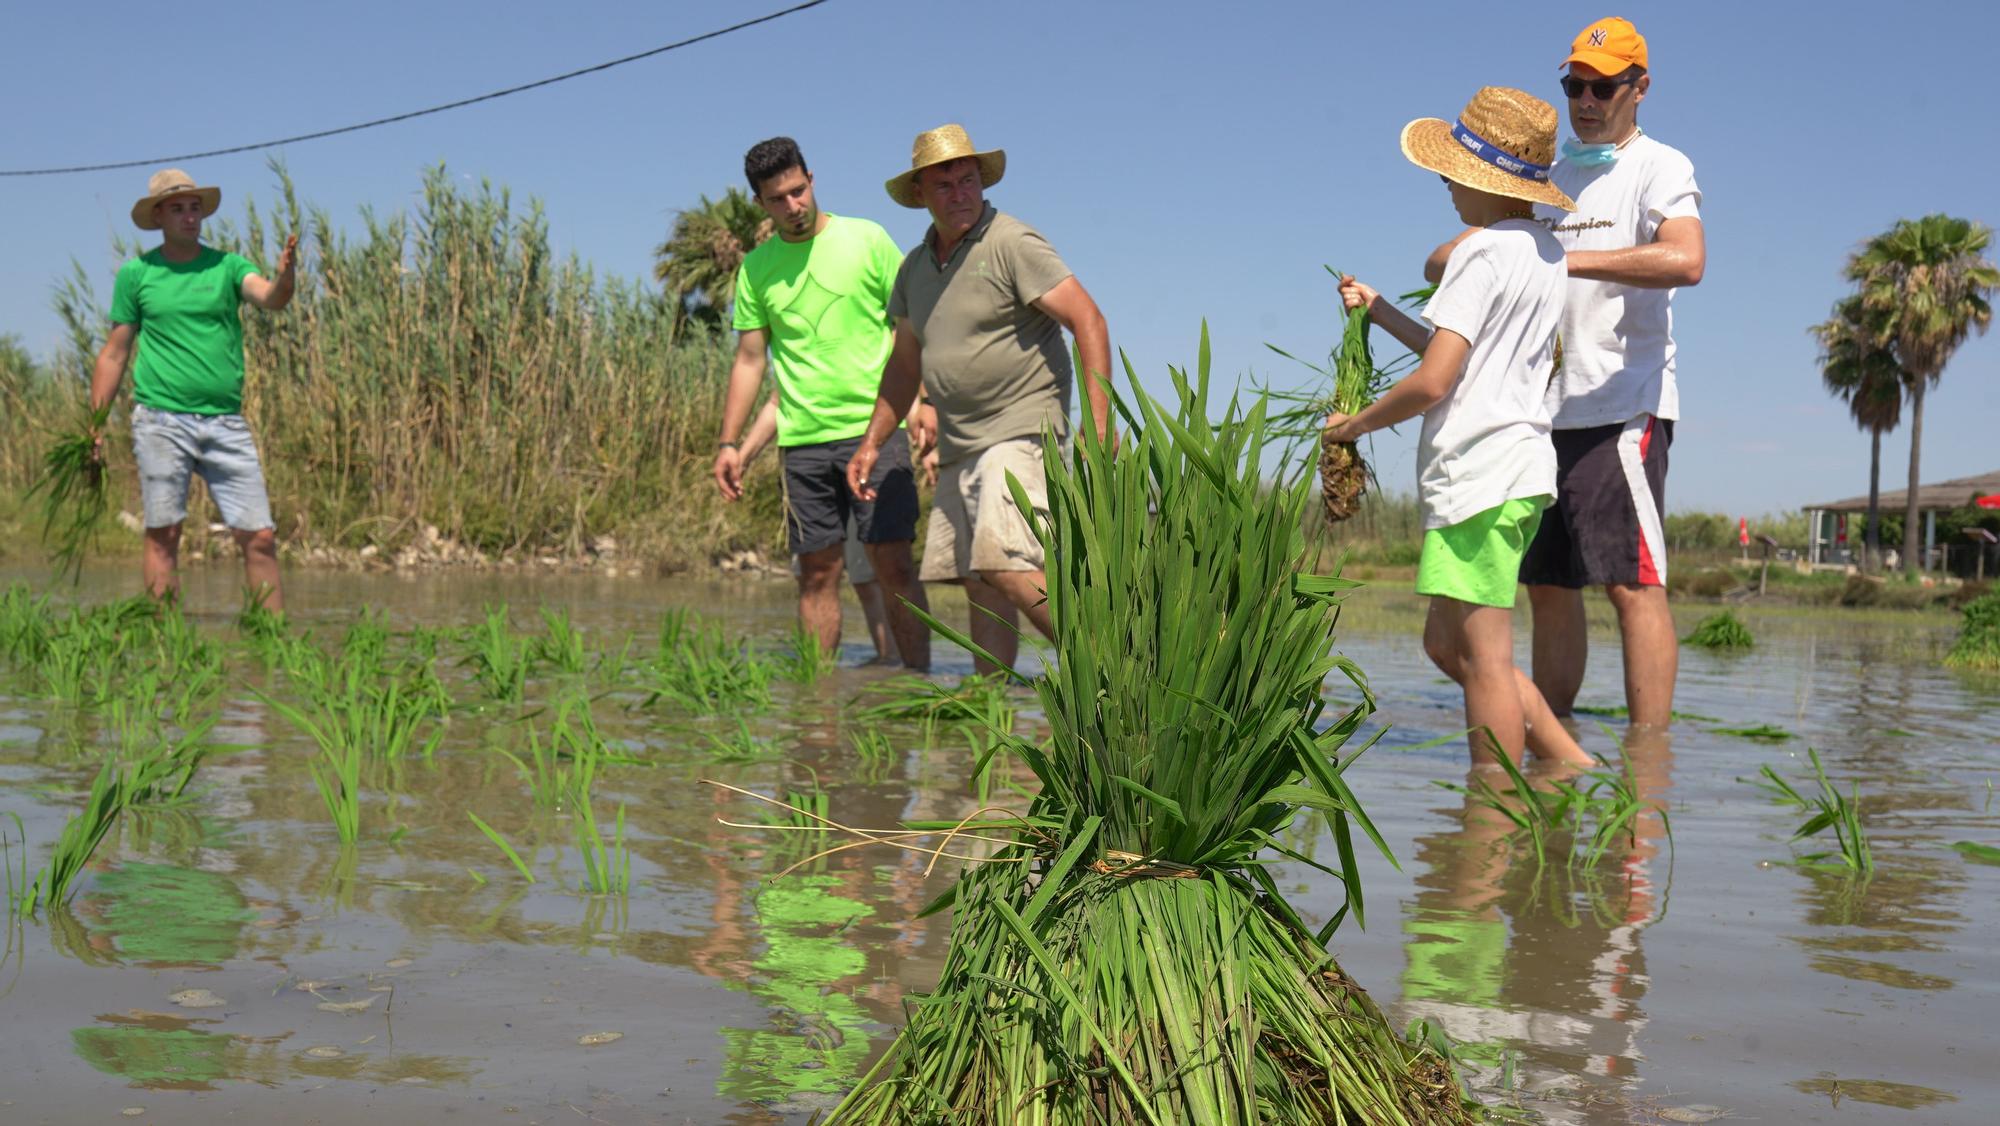 Turismo arrocero: así se puede conocer cómo se planta el arroz de l'Albufera